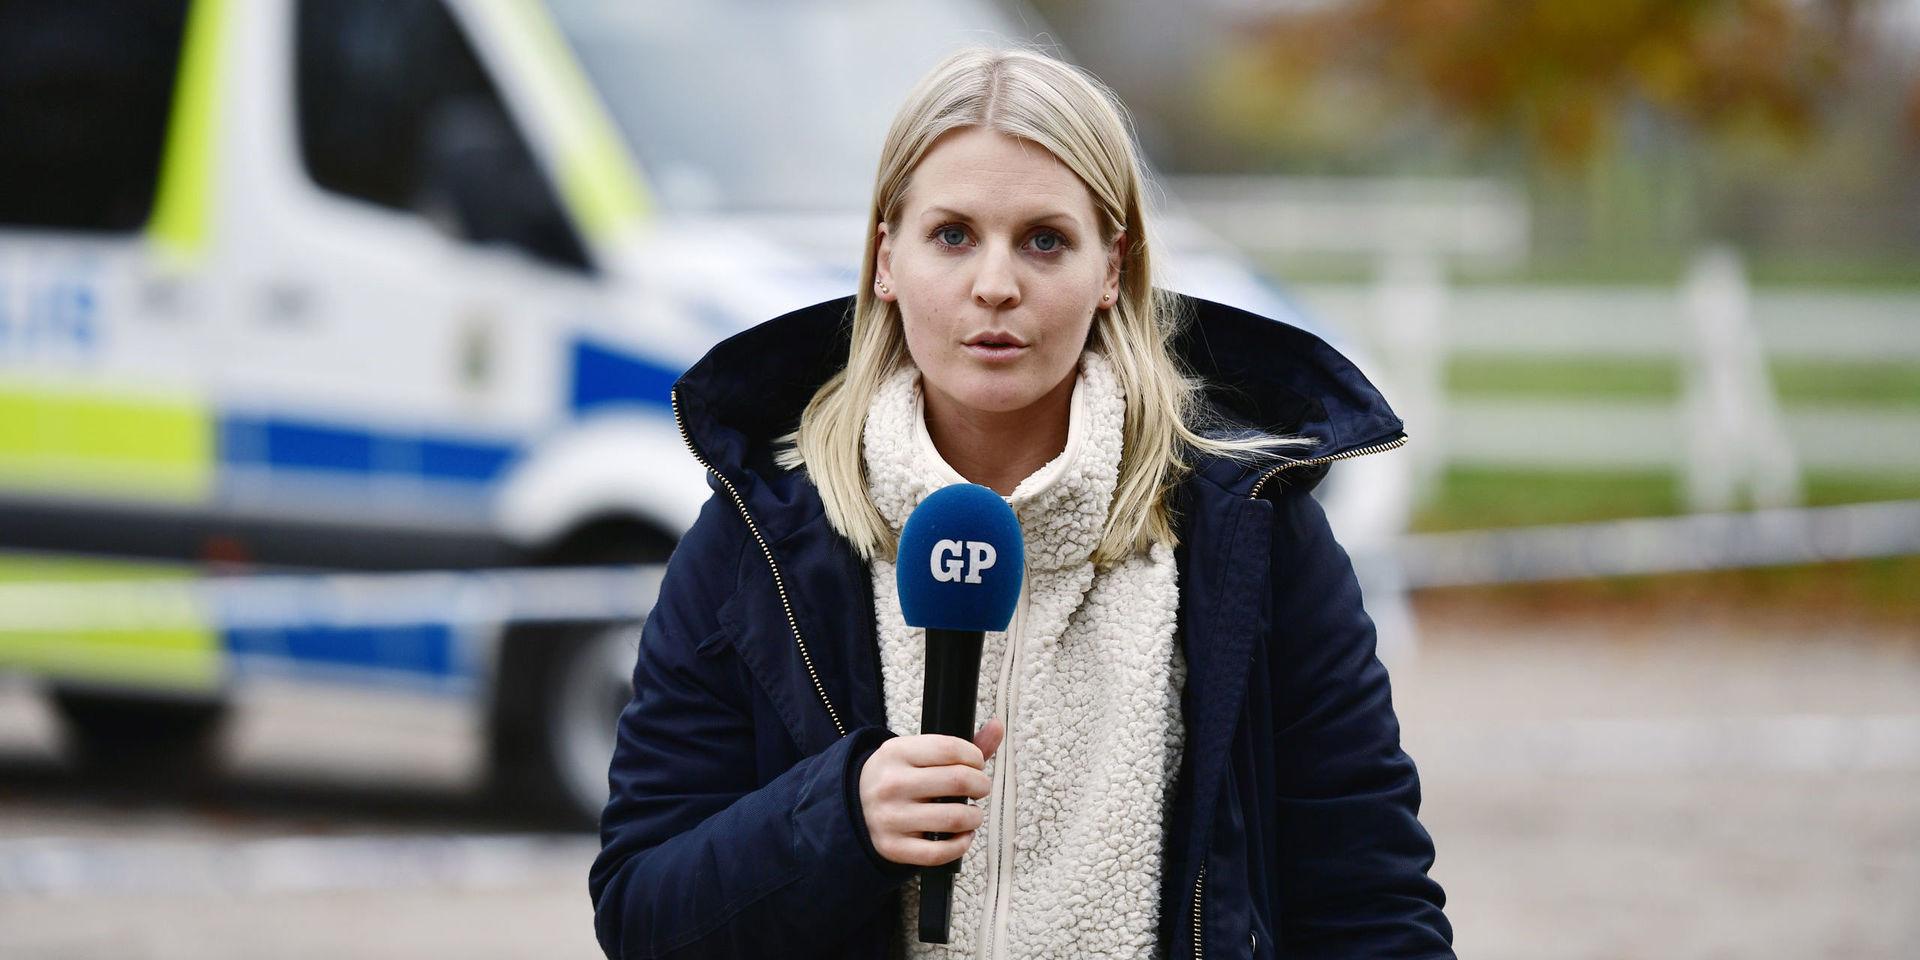 GP:s Karin Jansson rapporterar direkt. Nu utökas satsningen på direktsänd tv.